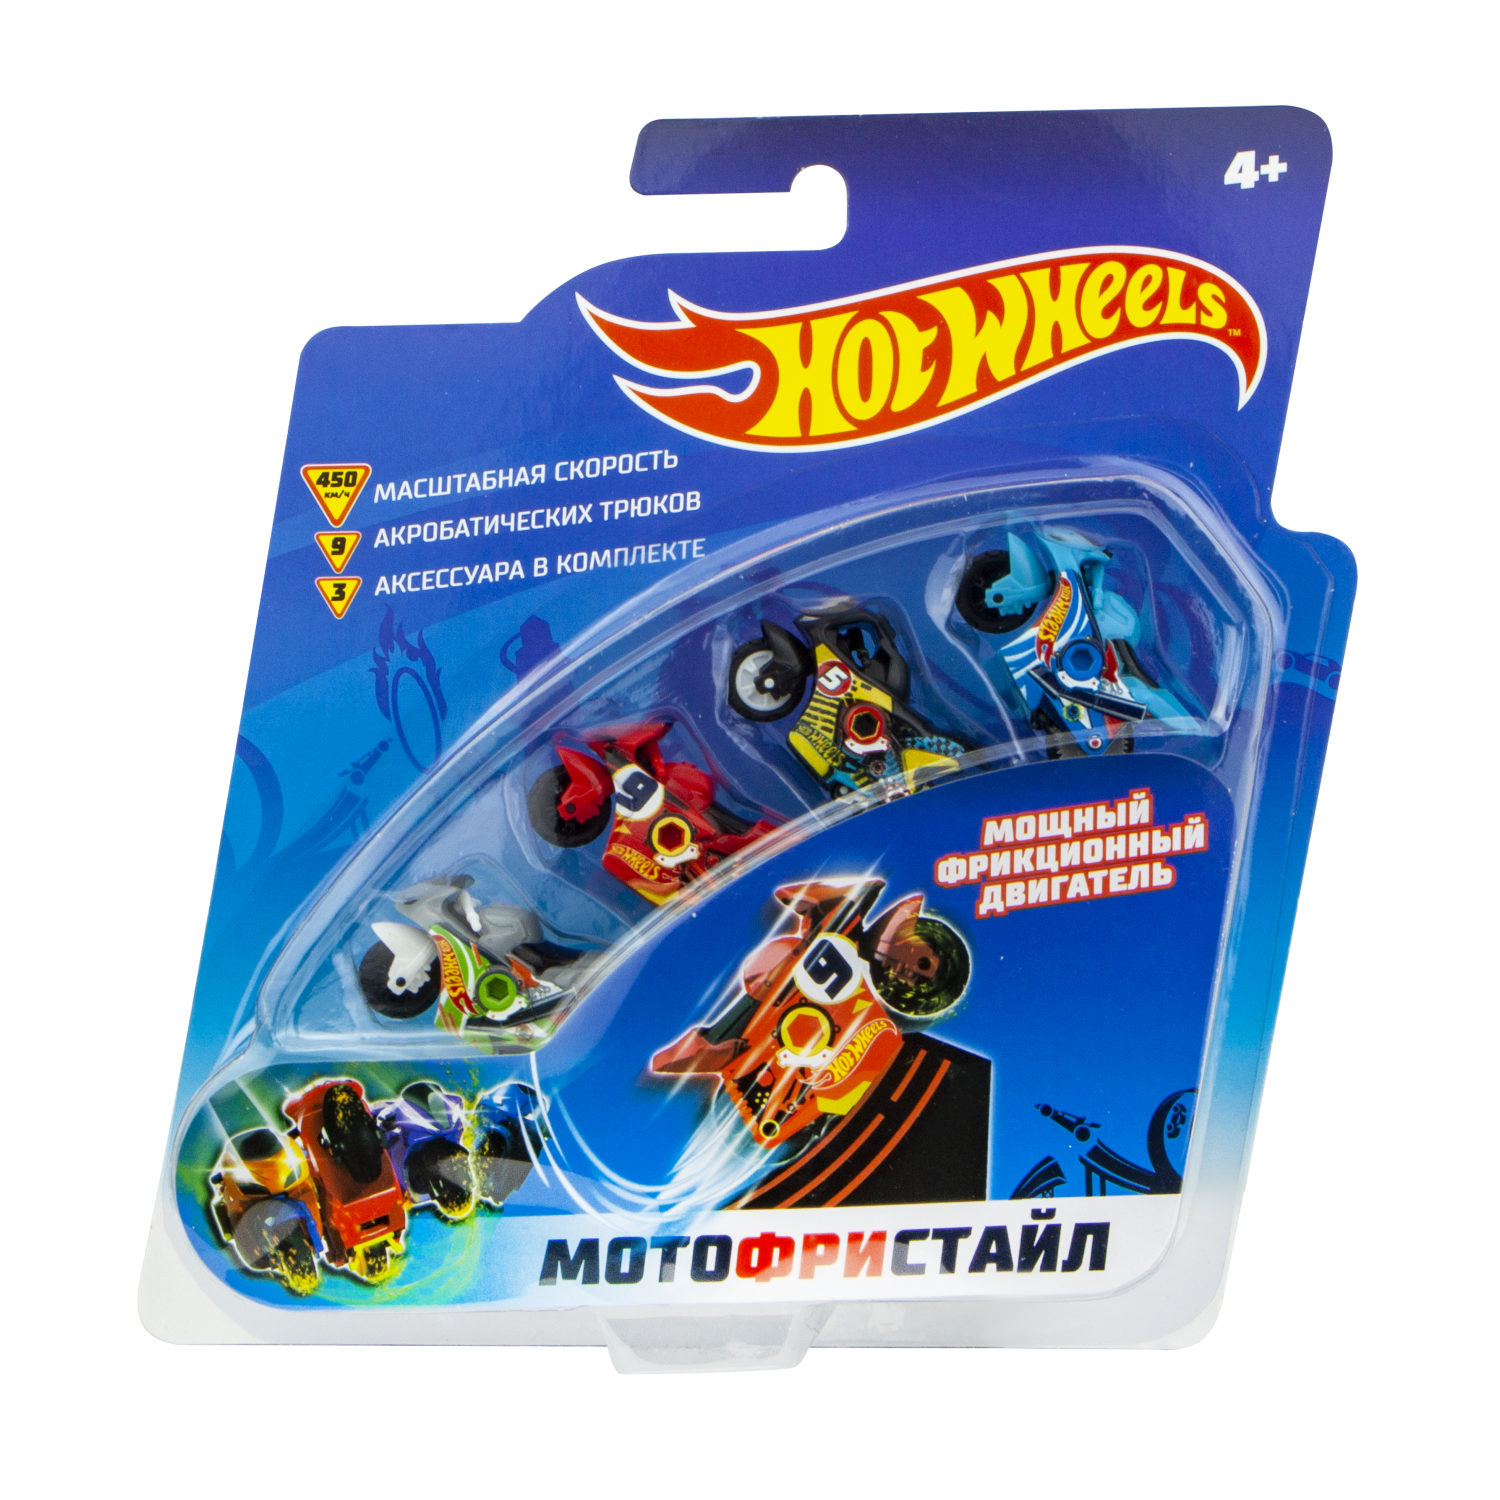 Игровой набор Hot Wheels – Мотофристайл: 4 инерционных мотобайка, трамплин, 3 аксессуара для трюков  